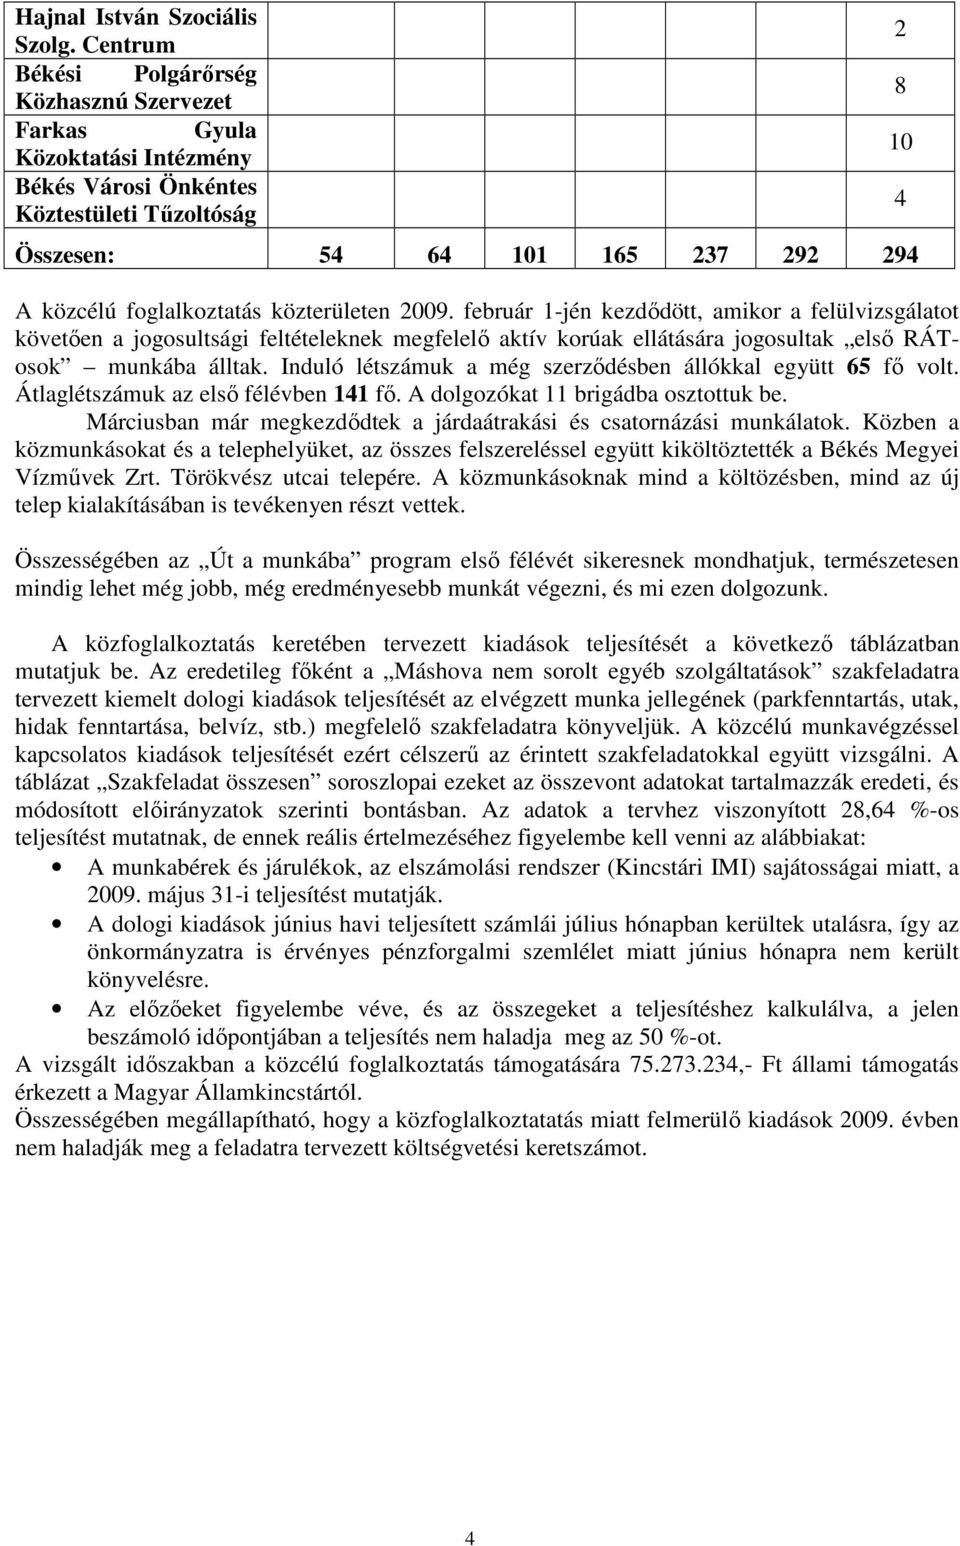 közterületen 2009. február 1-jén kezdıdött, amikor a felülvizsgálatot követıen a jogosultsági feltételeknek megfelelı aktív korúak ellátására jogosultak elsı RÁTosok munkába álltak.